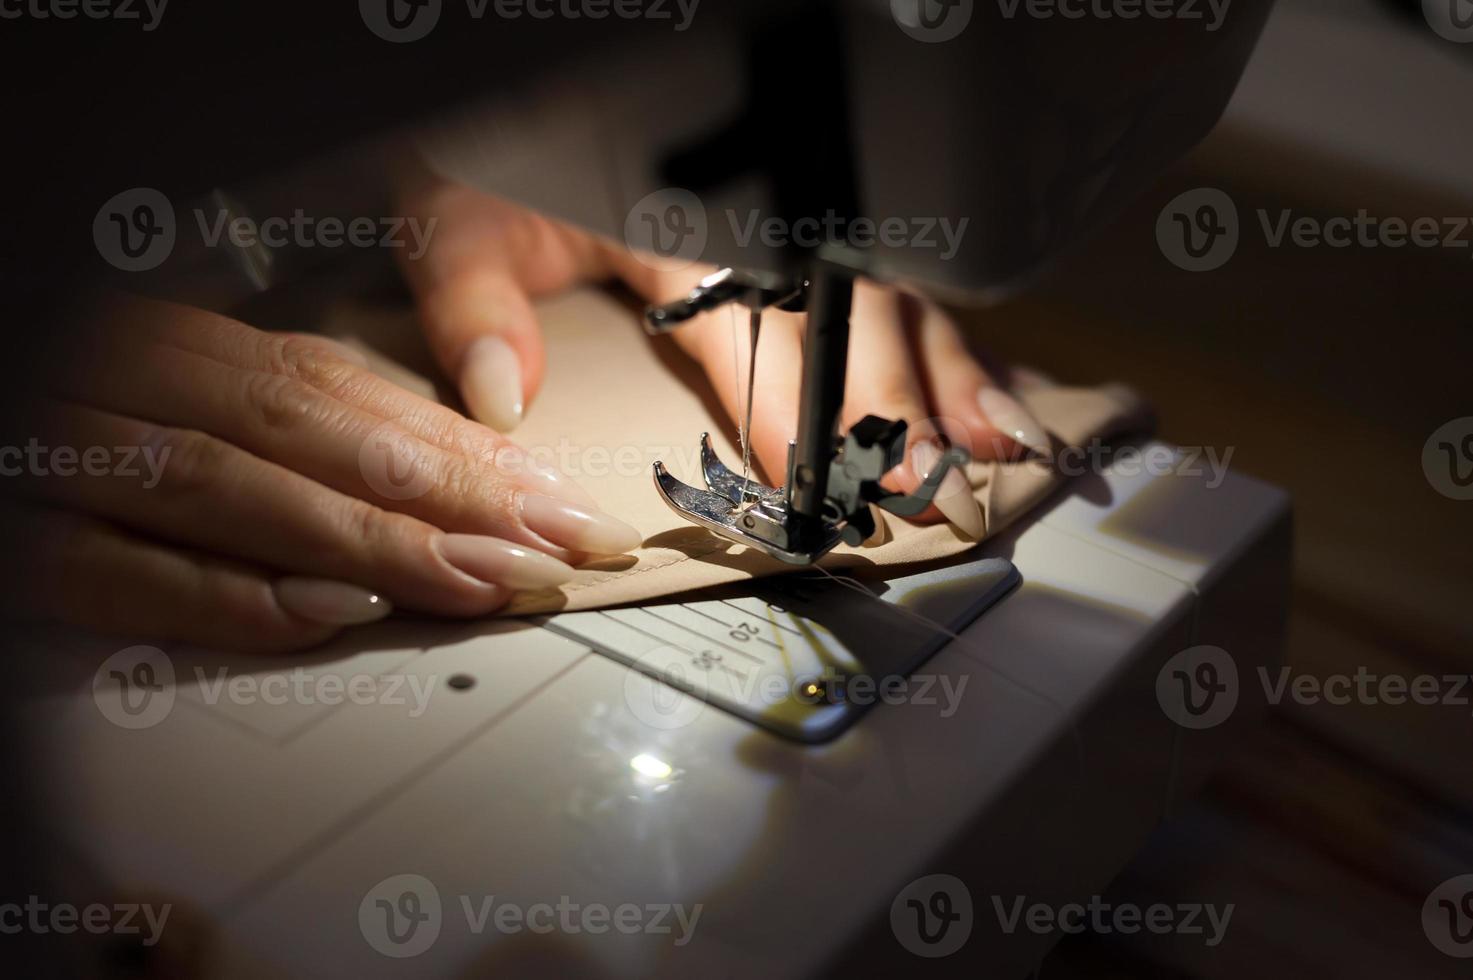 la mujer está cosiendo con máquina de coser. la costura es una de las artes textiles más antiguas. foto